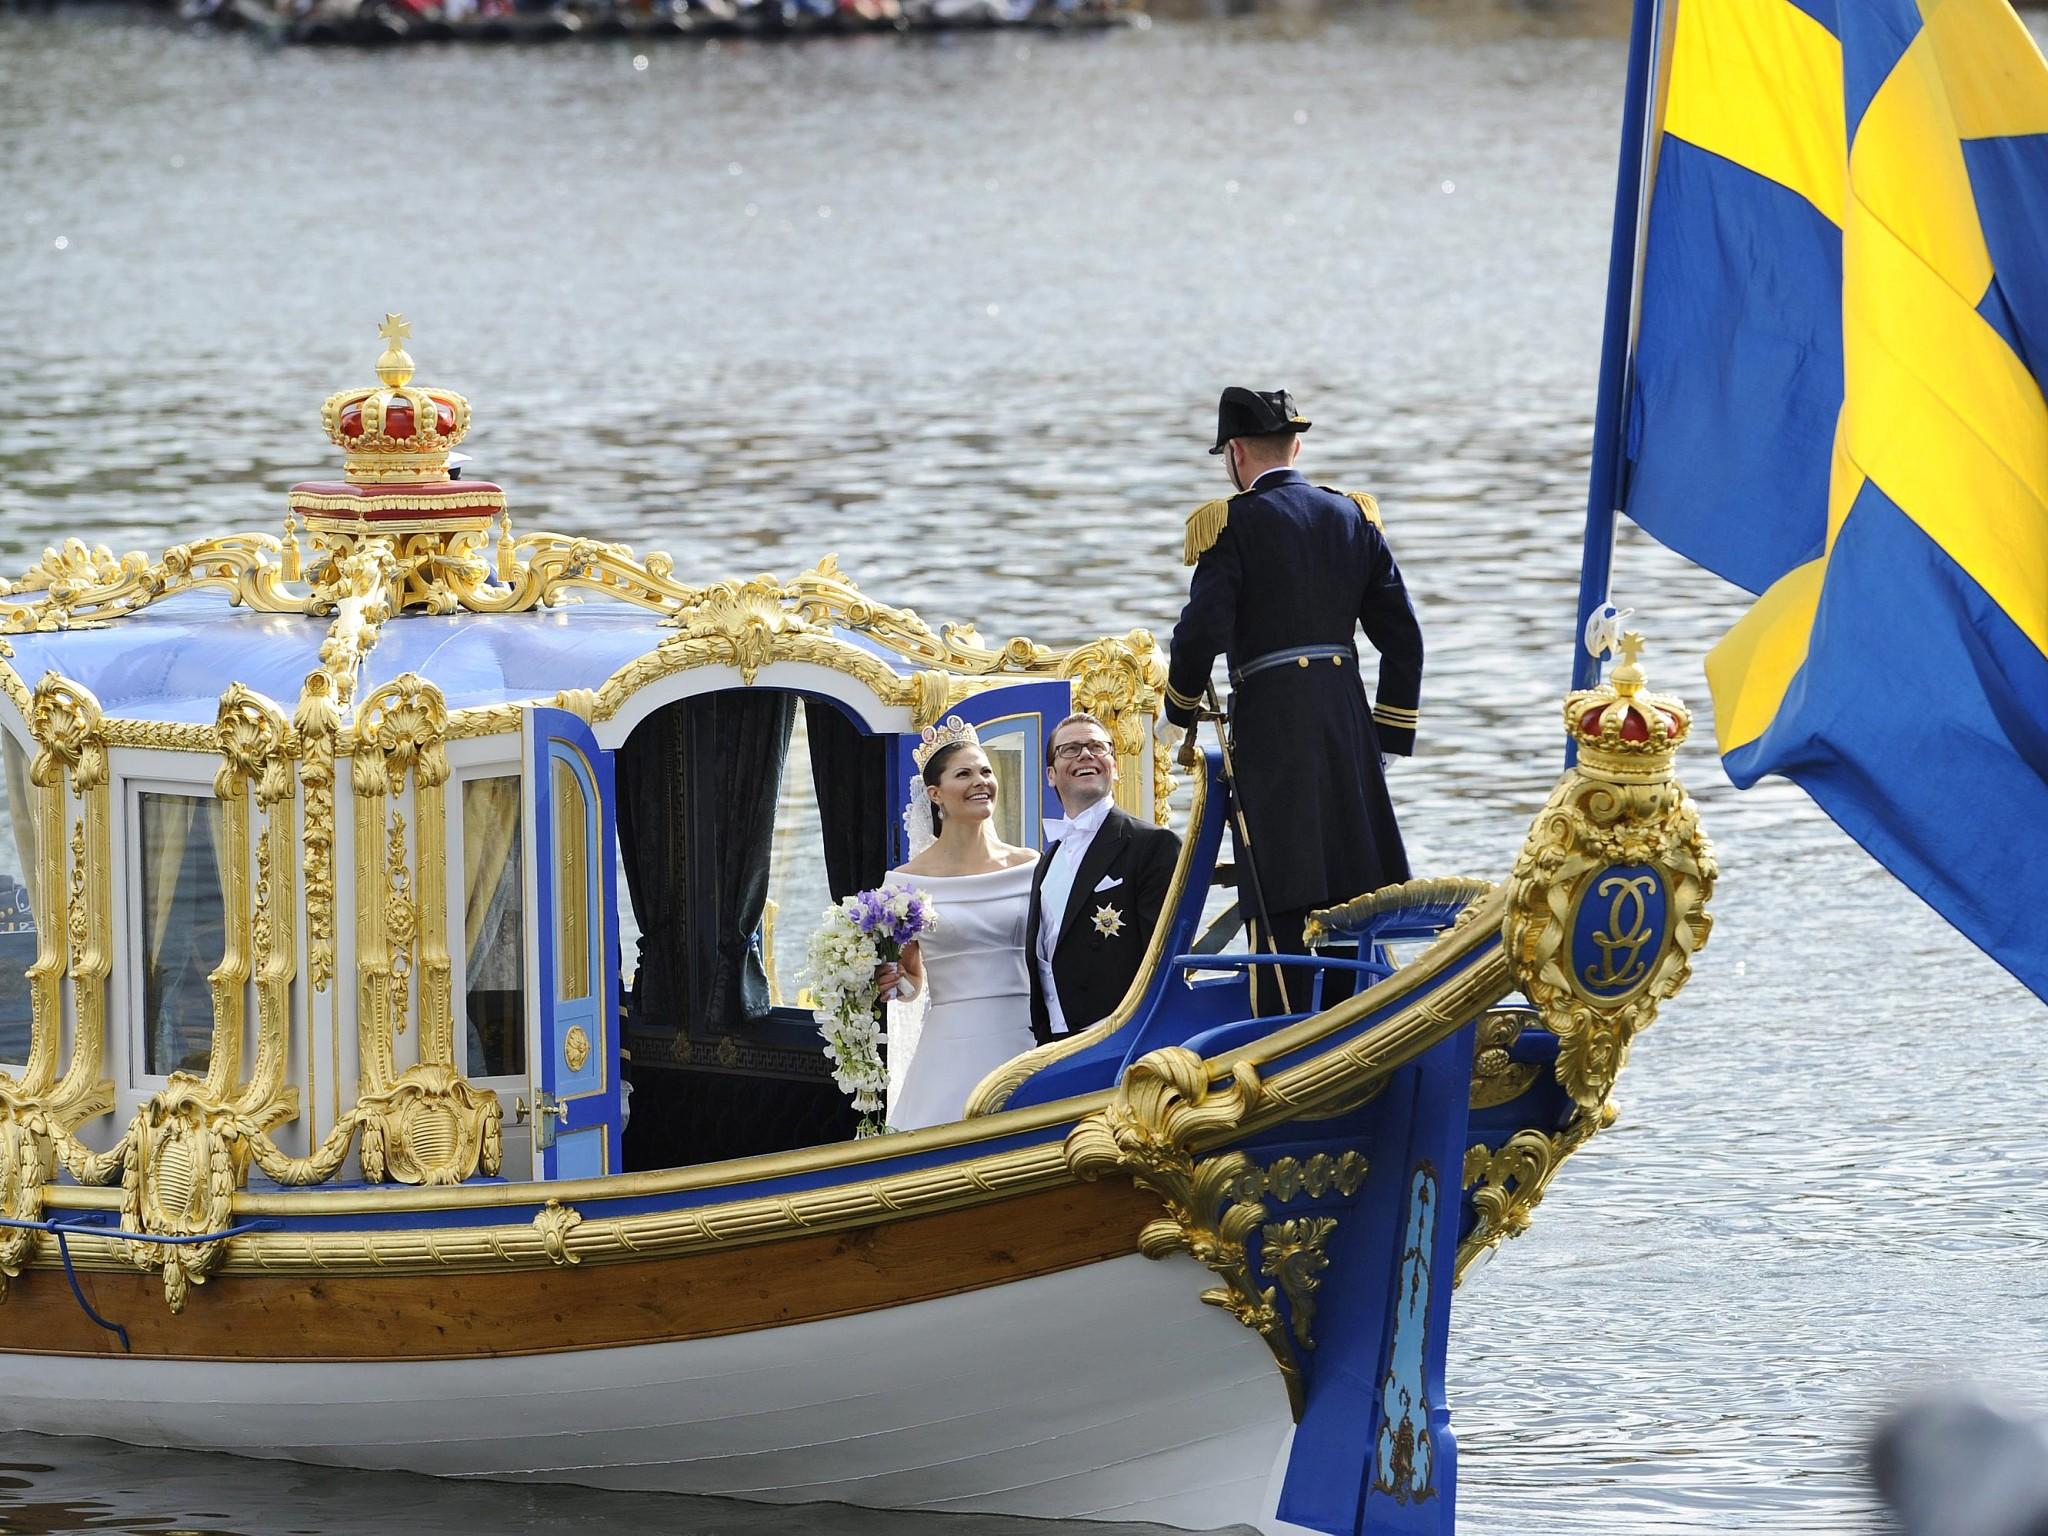 Schweden-Hochzeit in Bildern